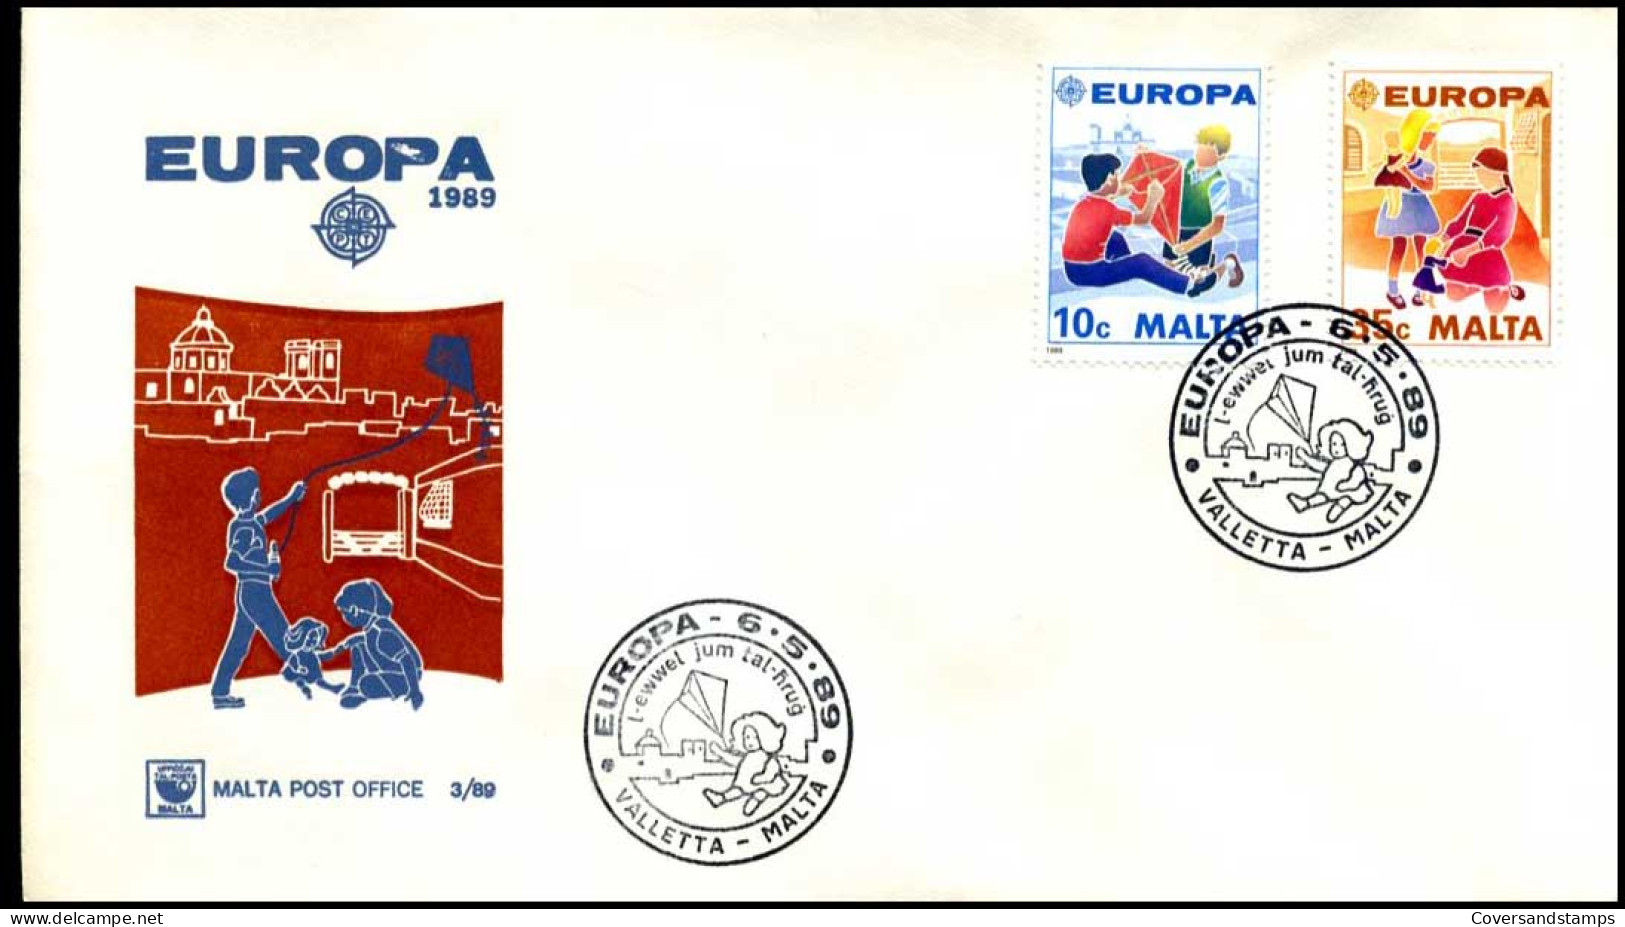  Malta - FDC - Europa CEPT 1989 - 1989